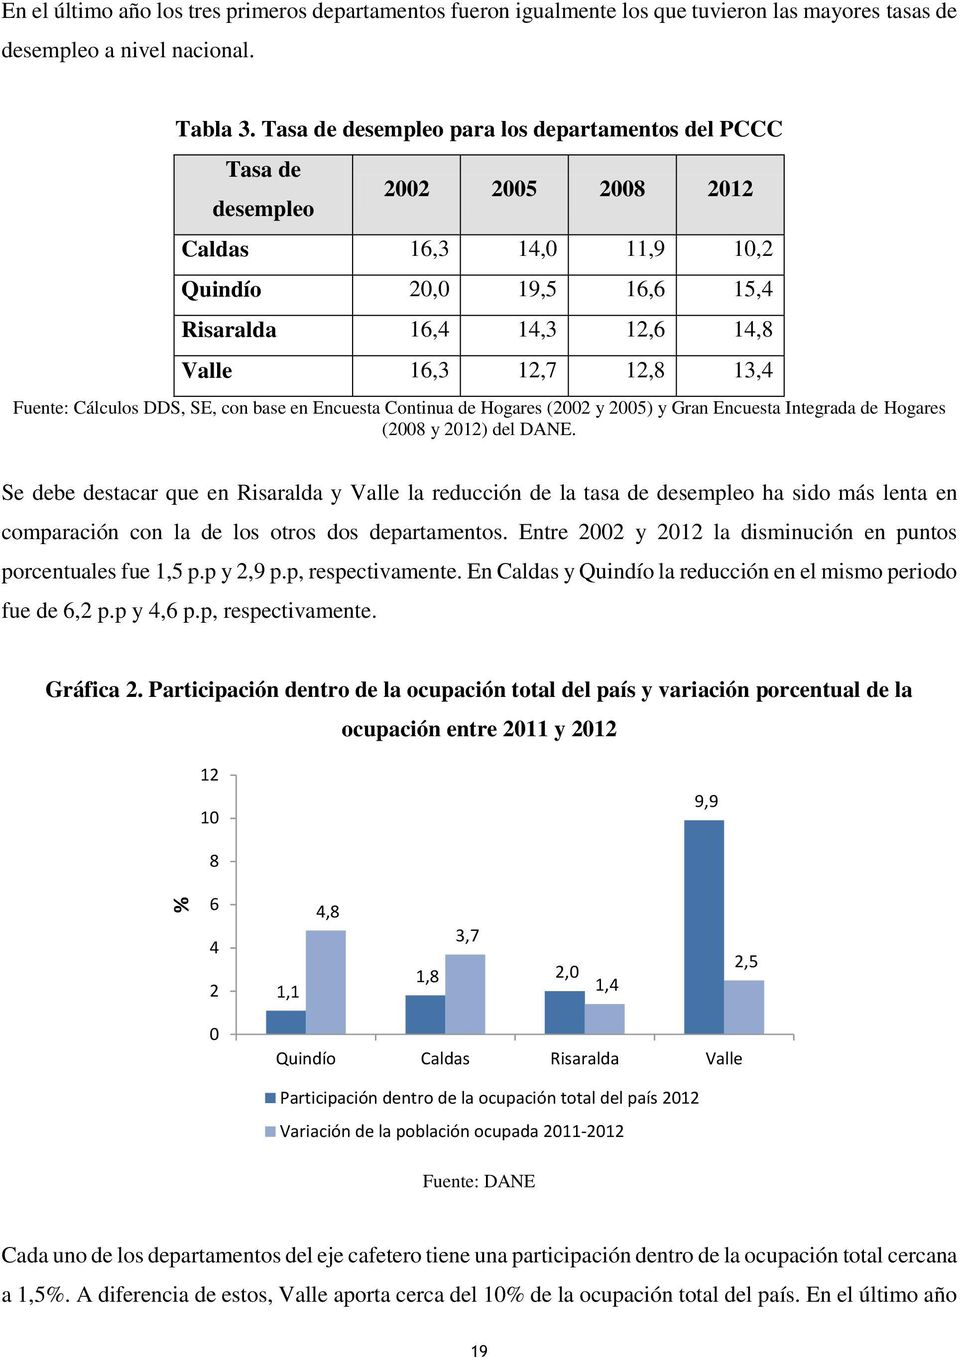 Fuente: Cálculos DDS, SE, con base en Encuesta Continua de Hogares (2002 y 2005) y Gran Encuesta Integrada de Hogares (2008 y 2012) del DANE.